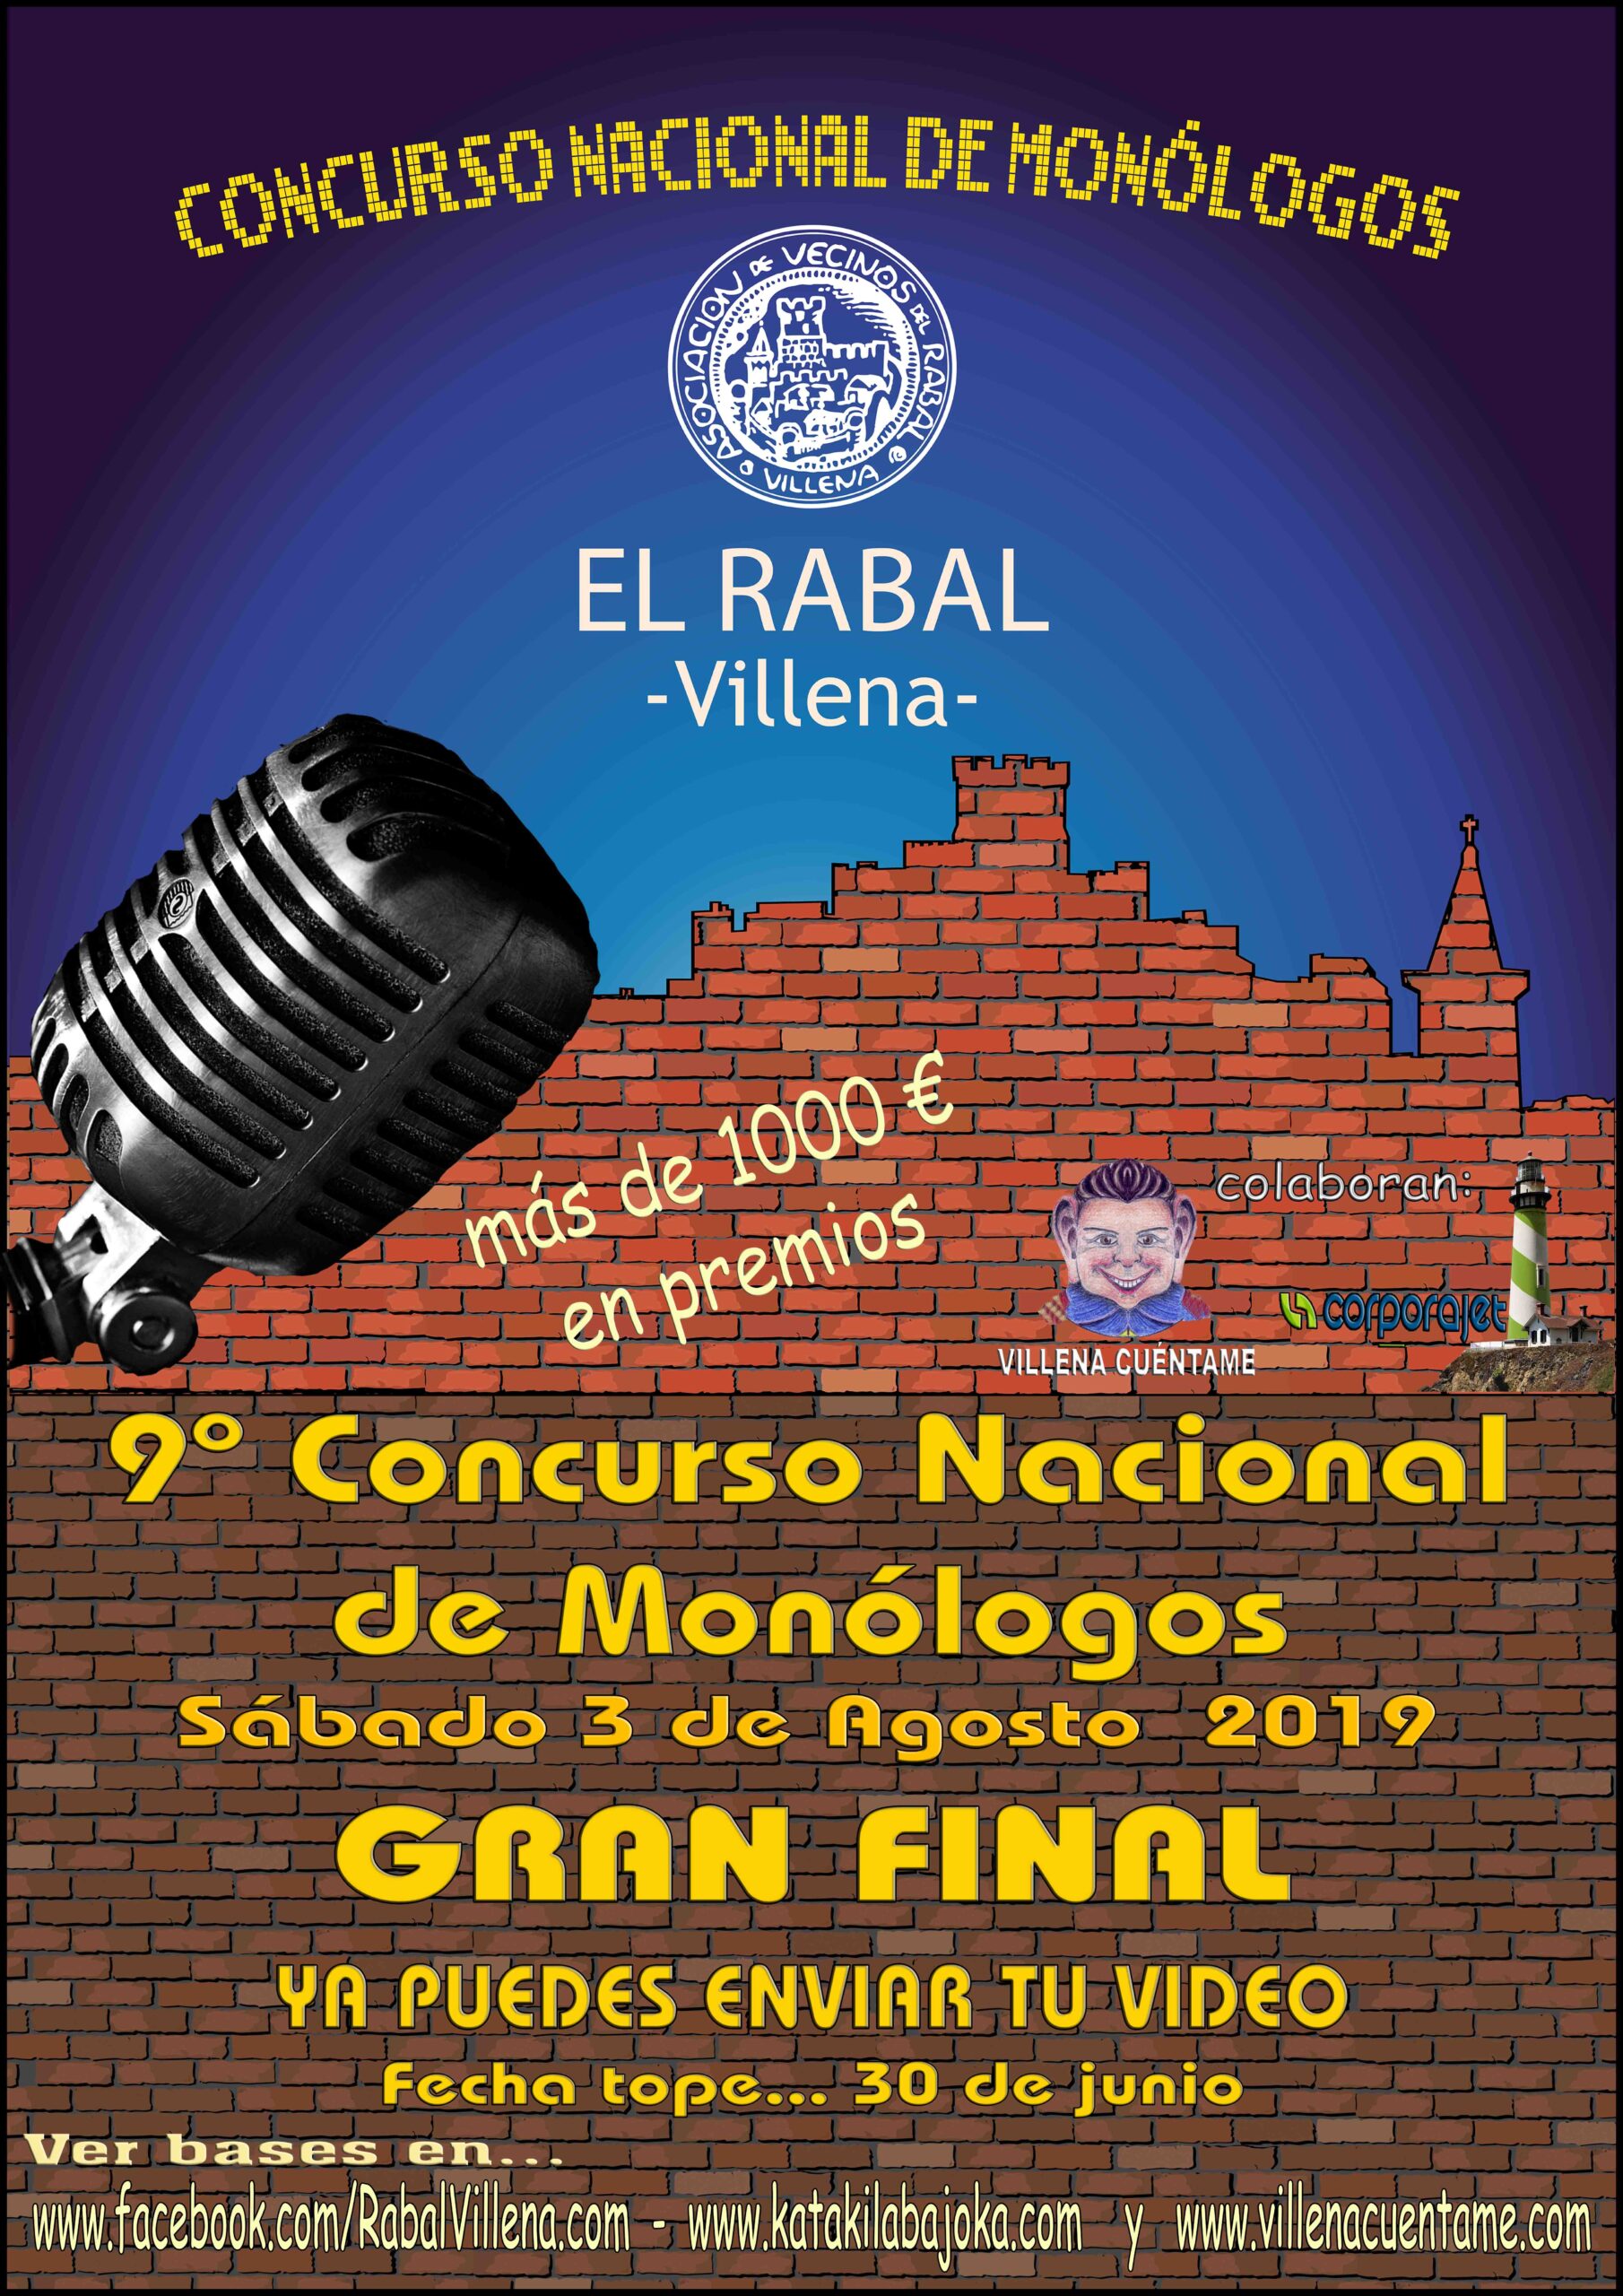 Bases del concurso nacional de monólogos El Rabal Villena 2019